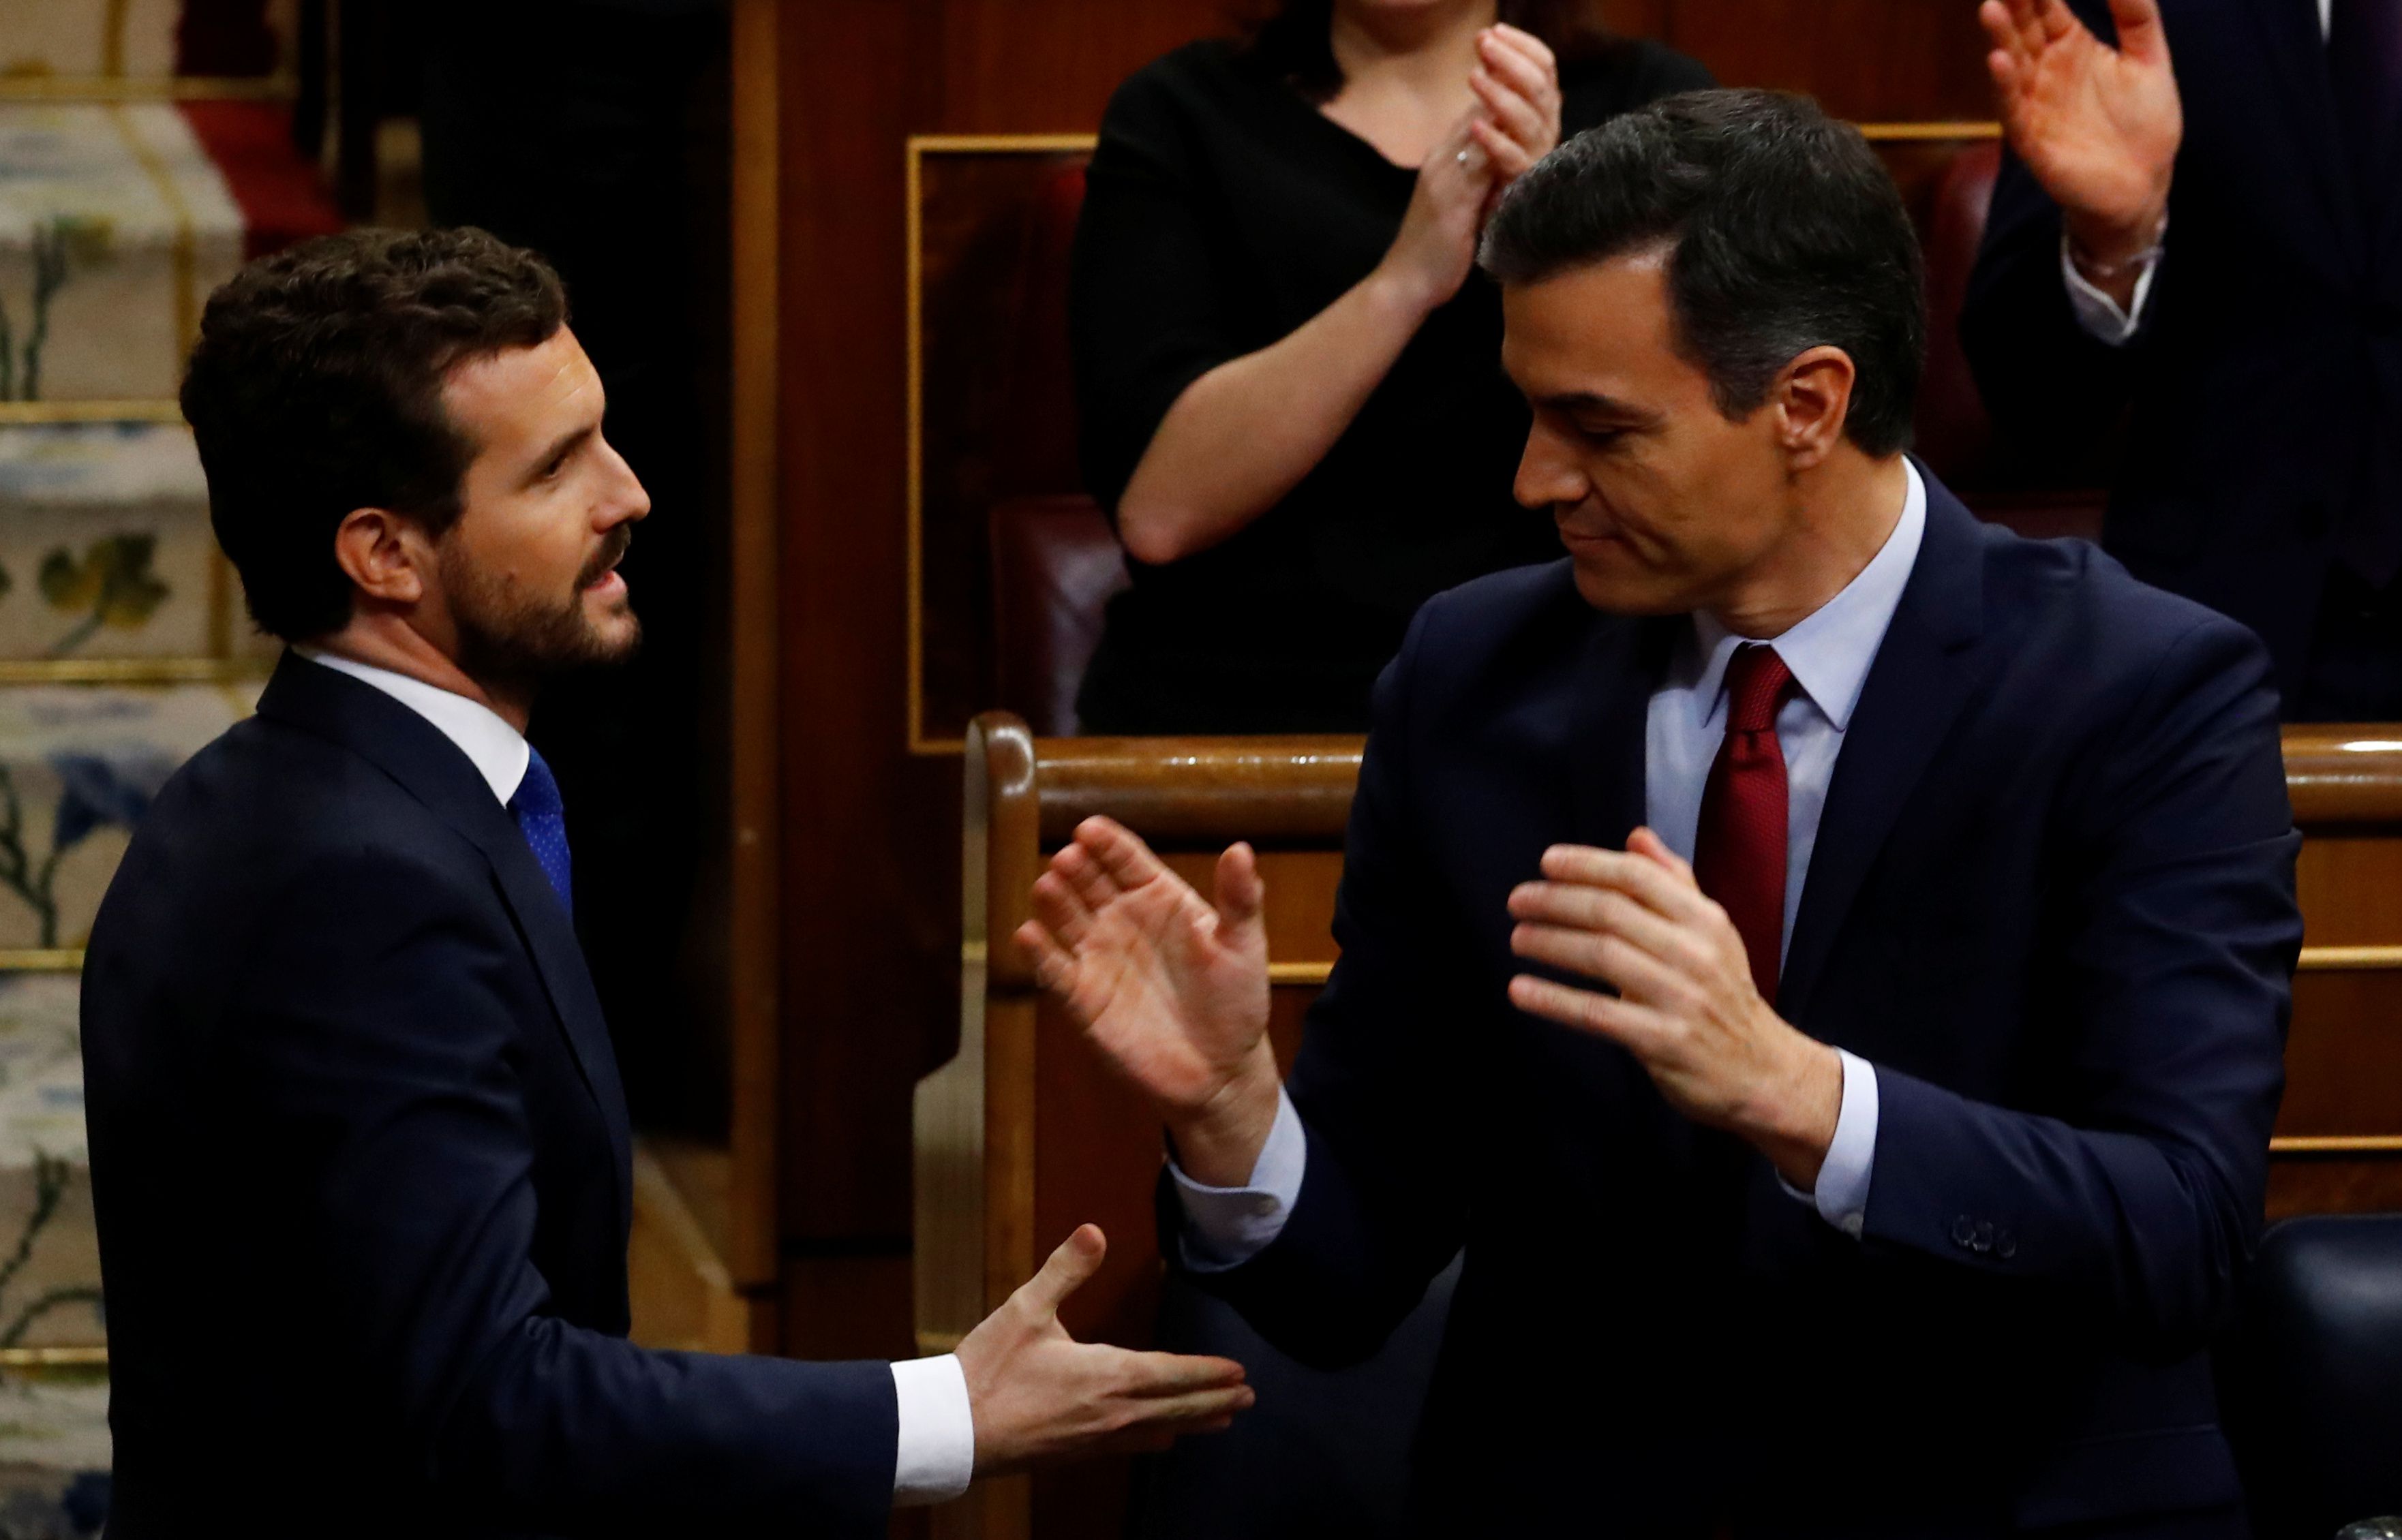 Pablo Casado, líder del PP, felicita a Sánchez tras la votación (REUTERS/Stringer)